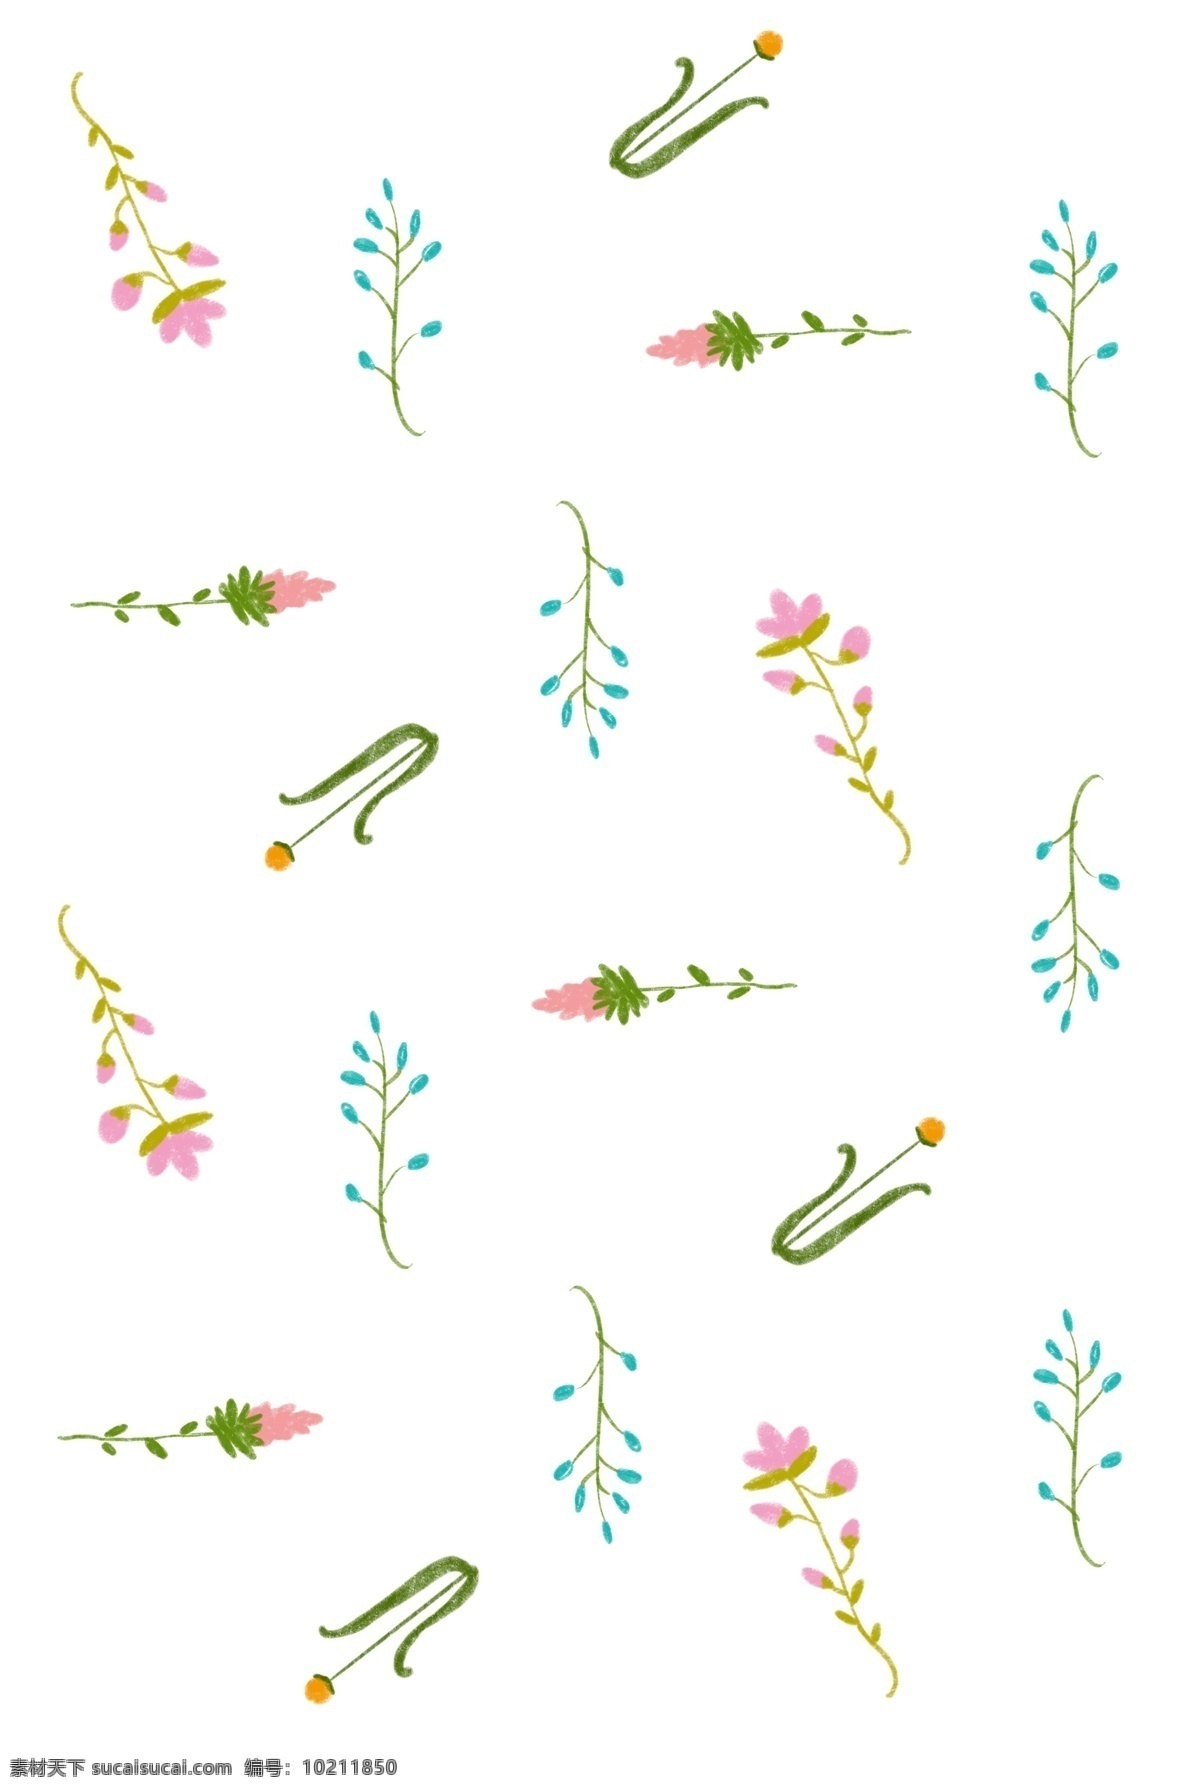 手绘 花卉 植物 底纹 手绘底纹 花卉底纹 底纹插画 植物底纹 小花底纹 插画 插图